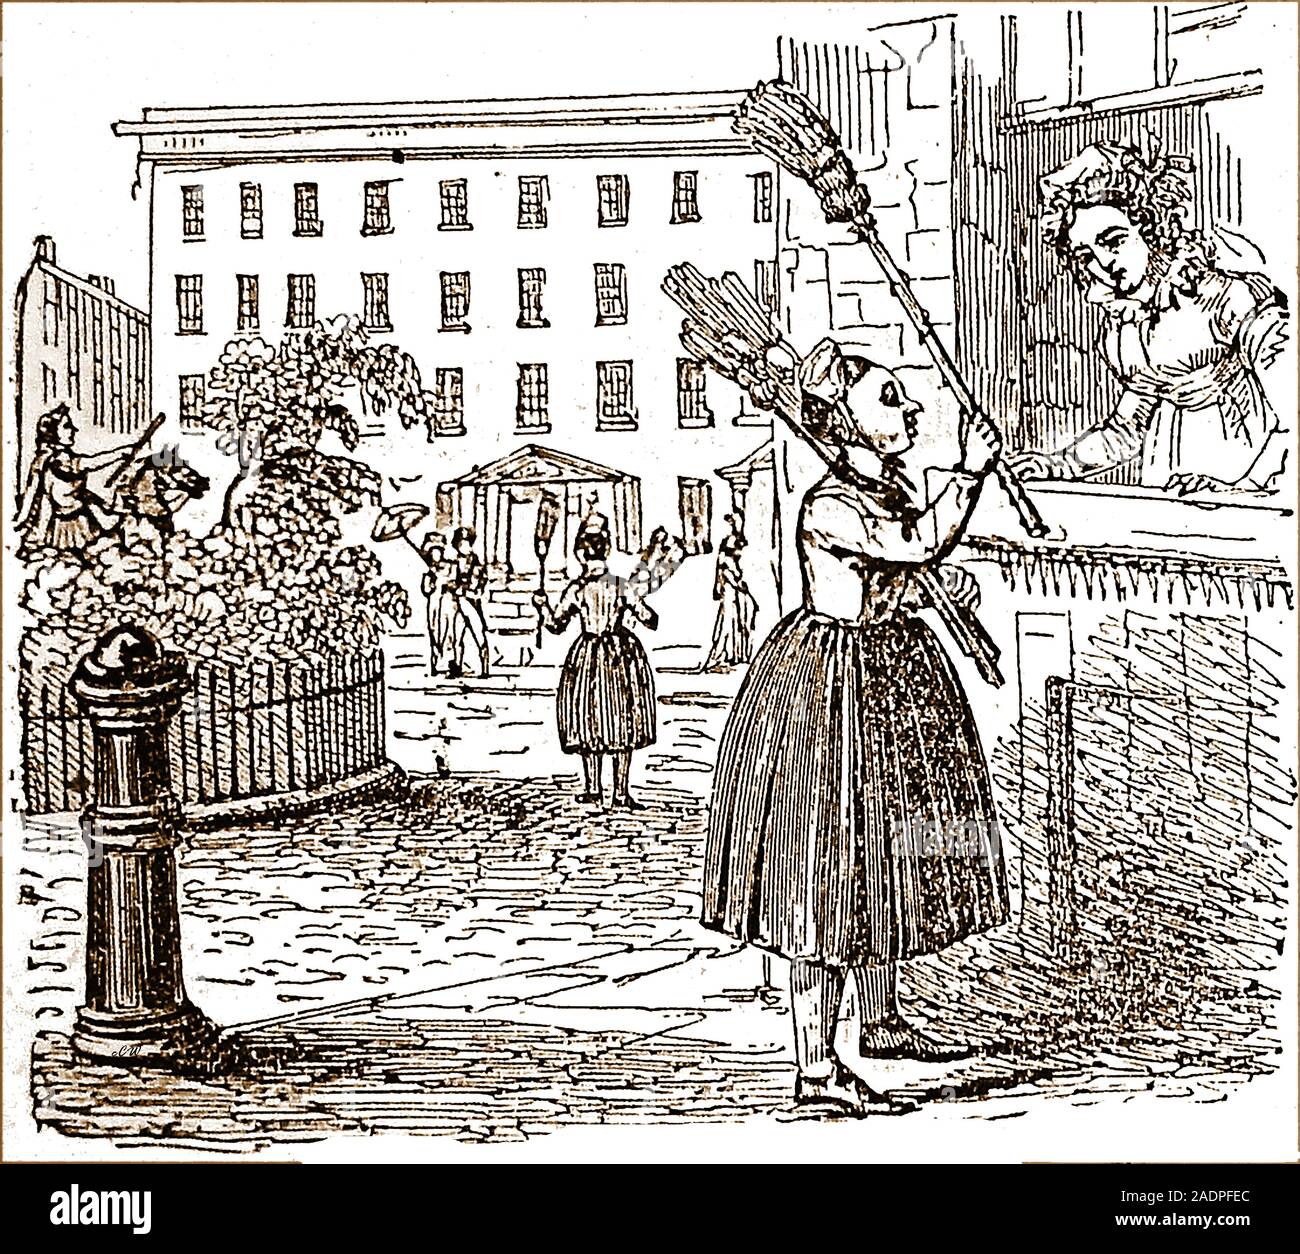 Une illustration de 1828 paysan flamand vendeurs balai à Londres et la méthode standardisée de robe qui était composé d'une jupe ample et un capuchon avec une cocarde tricolore, et des chaussures à boucle Banque D'Images